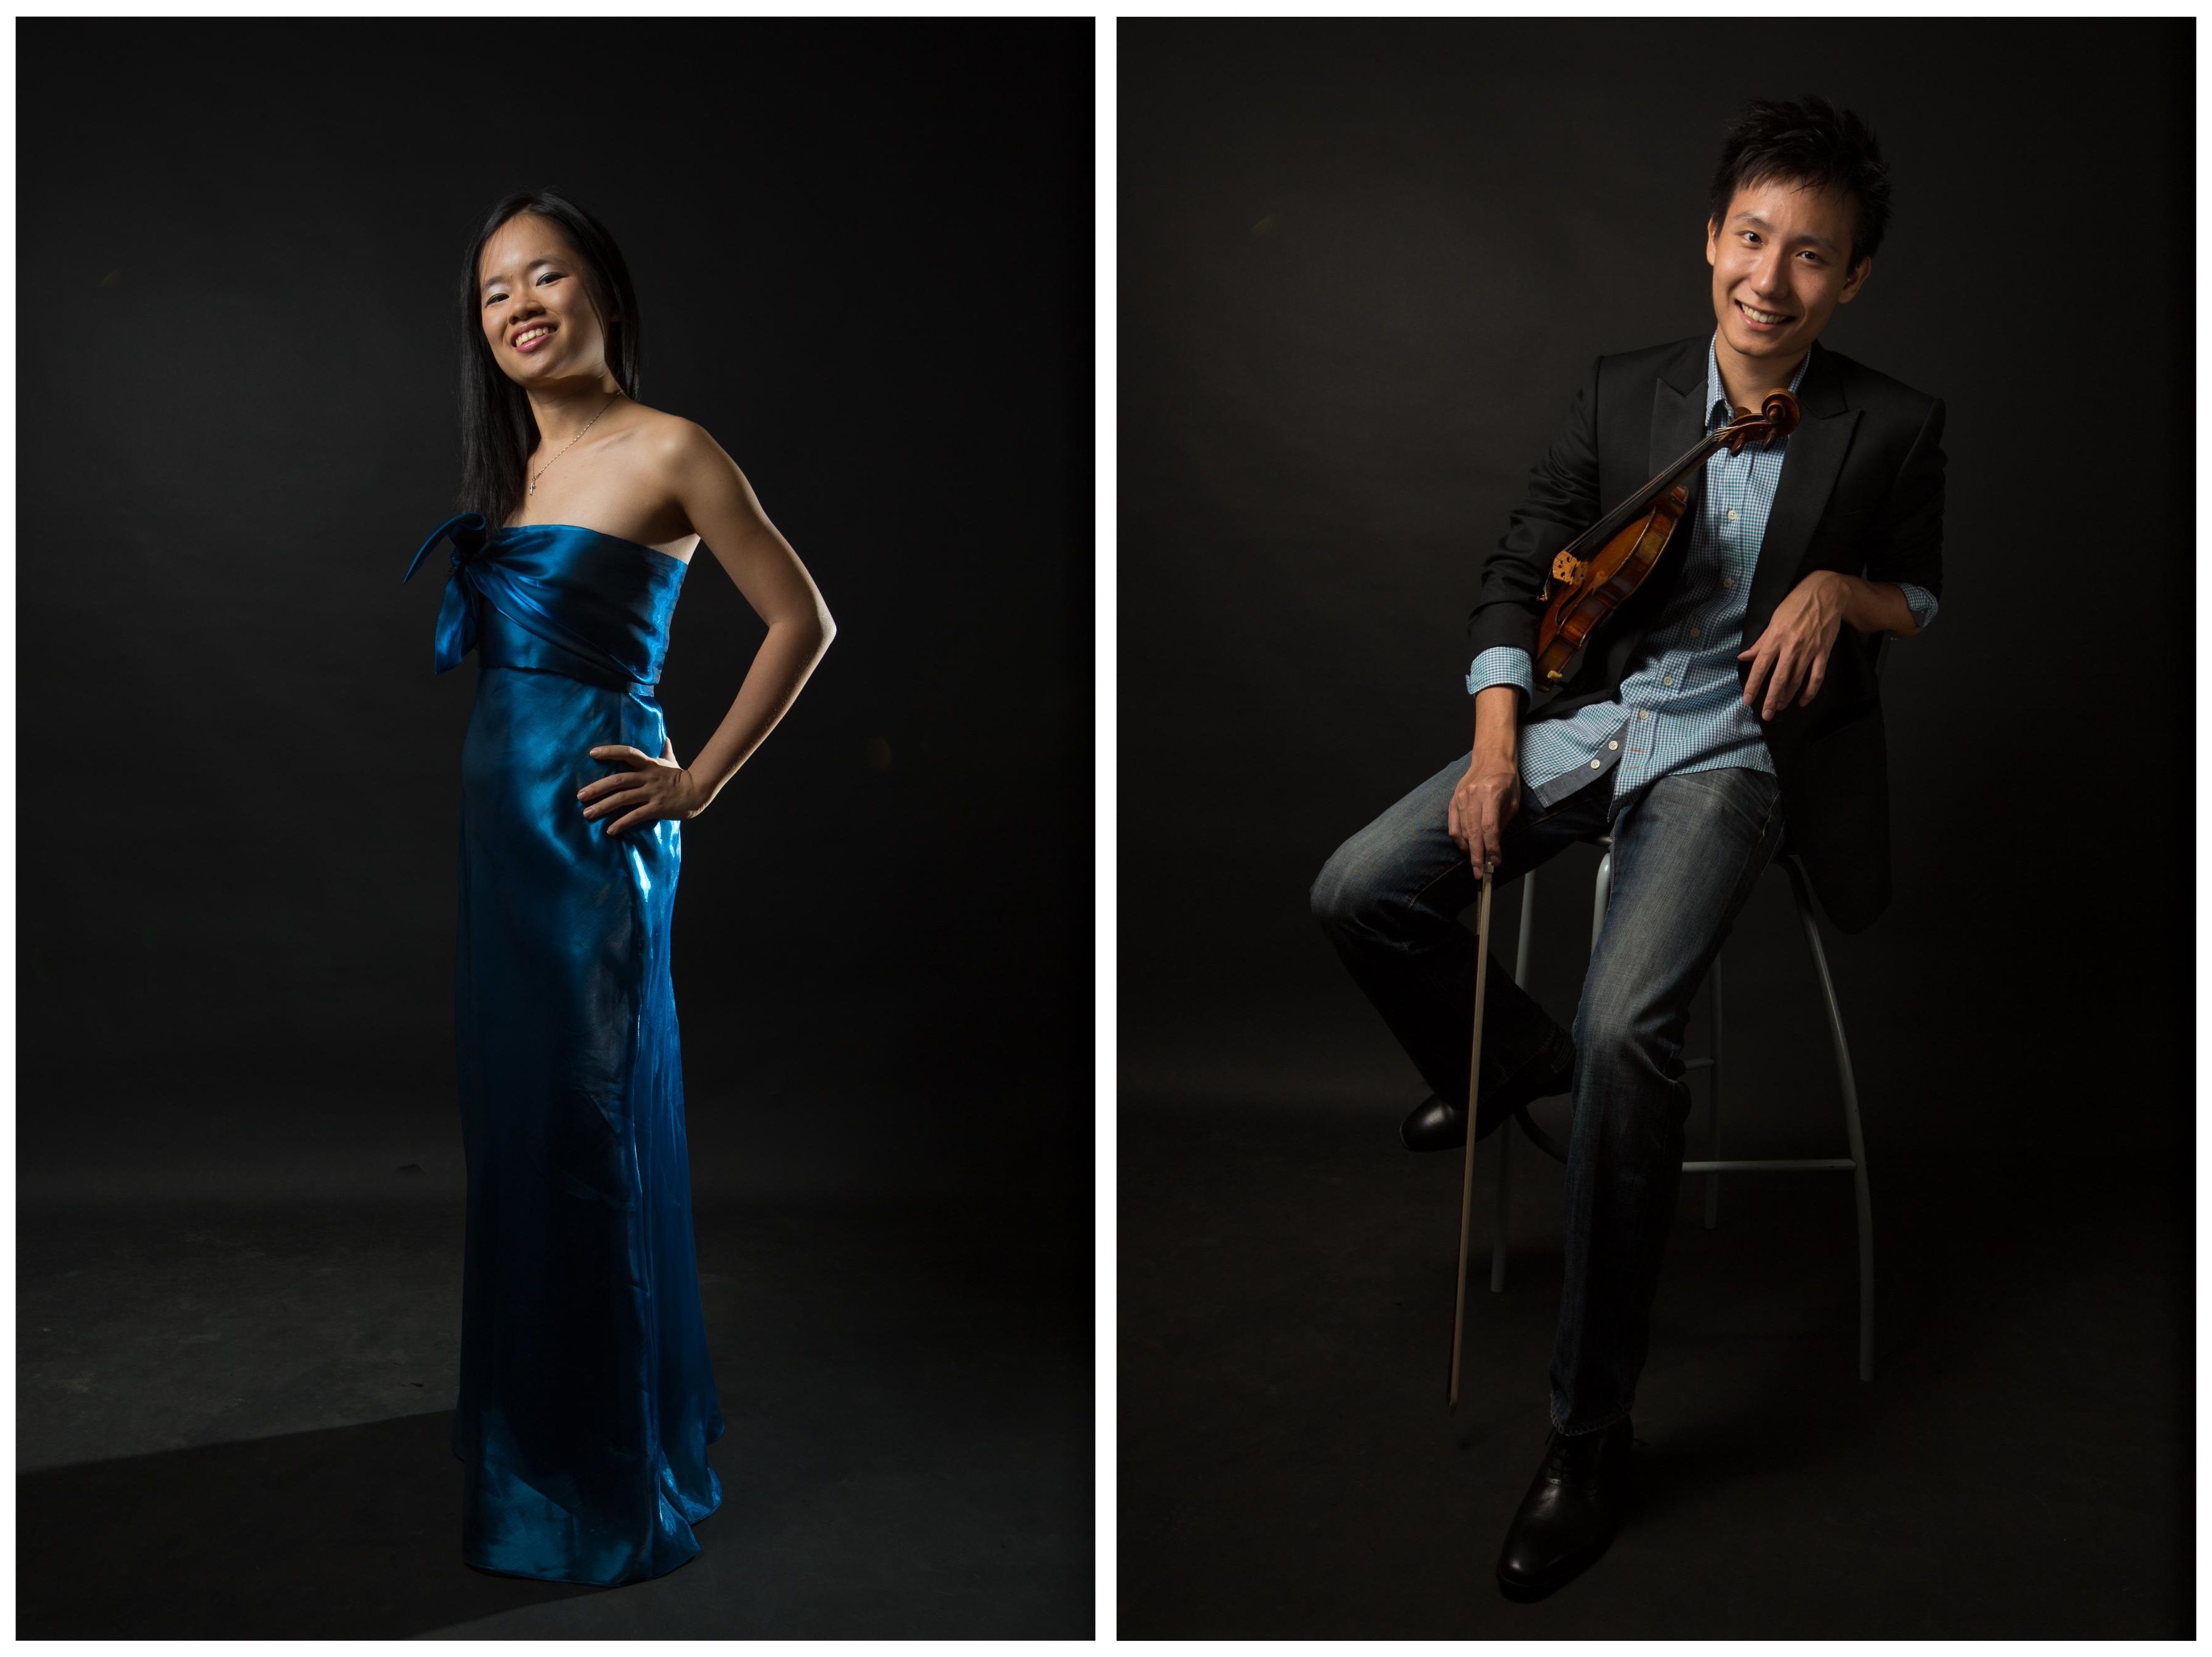 Abigail Sin, Loh Jun Hong to add wine pairings to chamber music